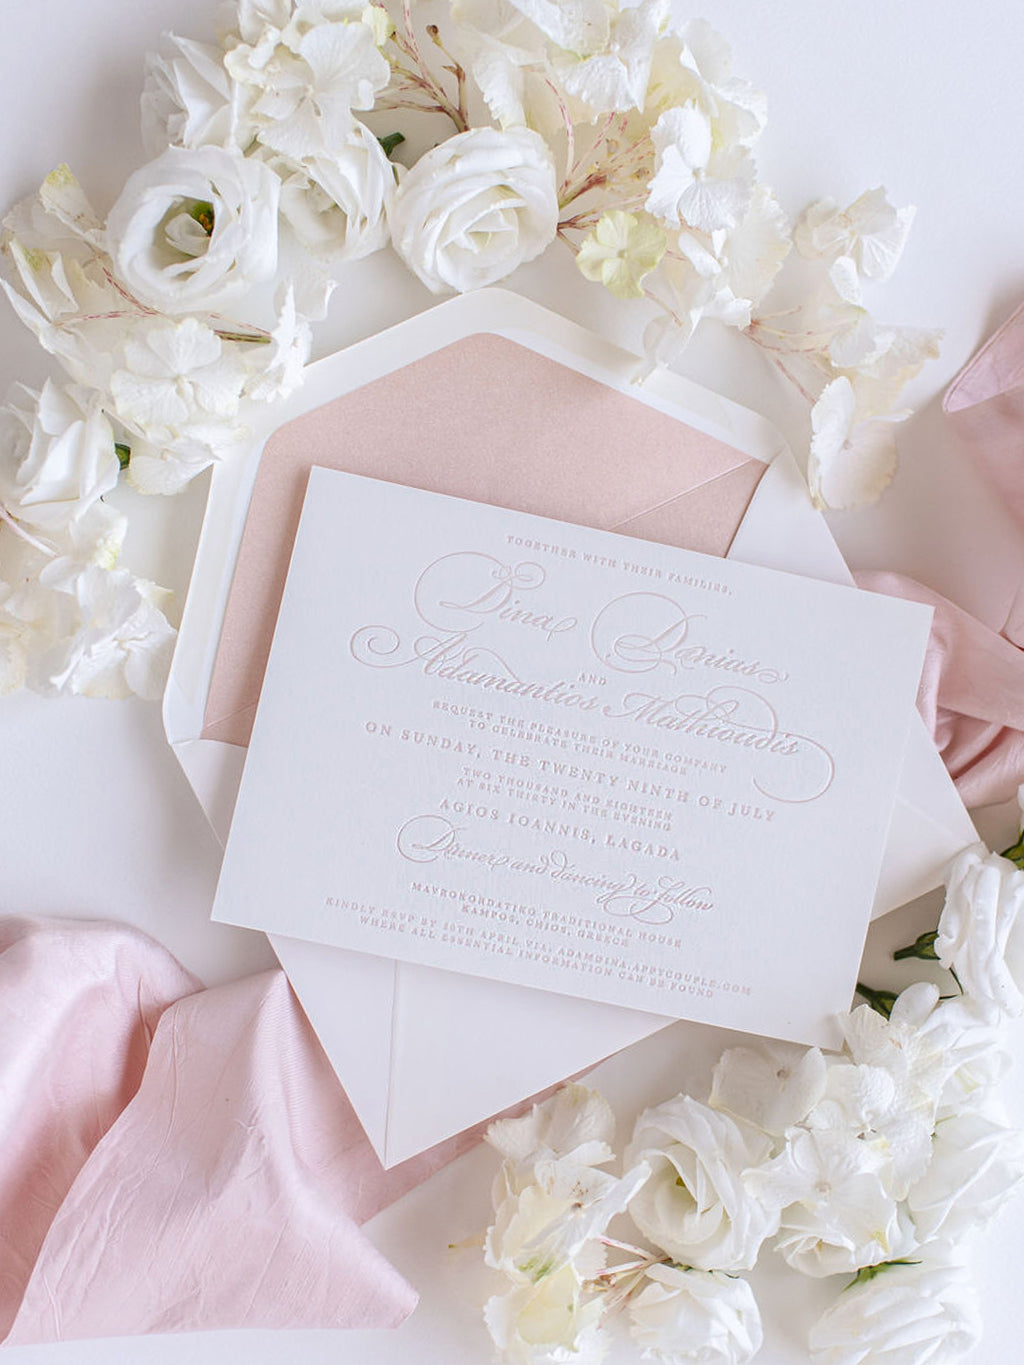 Invitación elegante del día de la boda tipográfica de lujo en tablero 100 % algodón de 710 g/m²